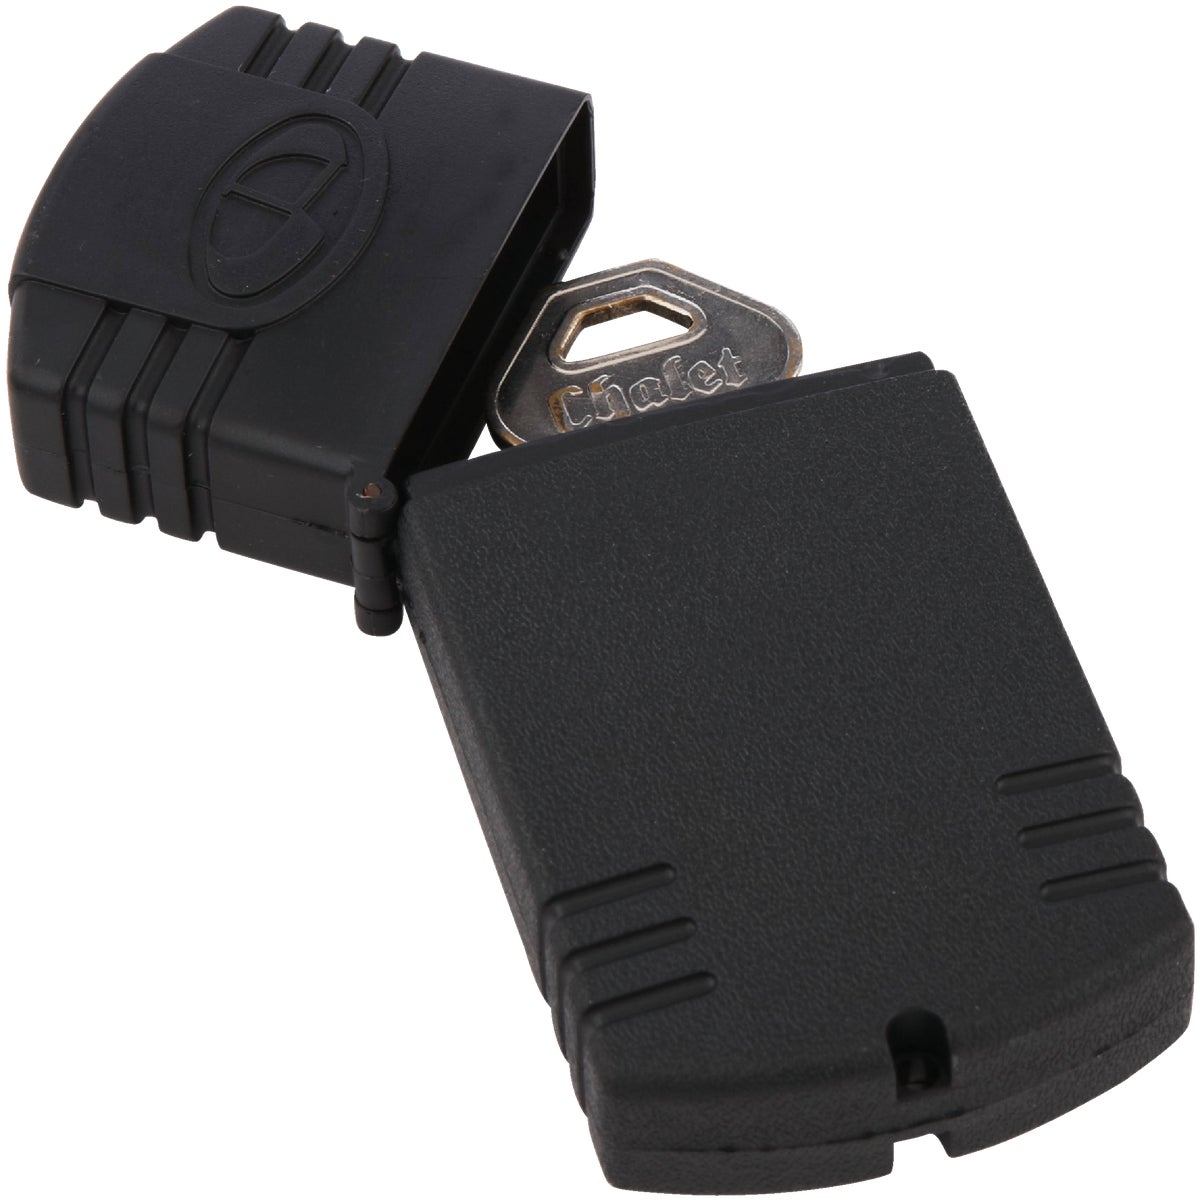 magnetic key hider for car